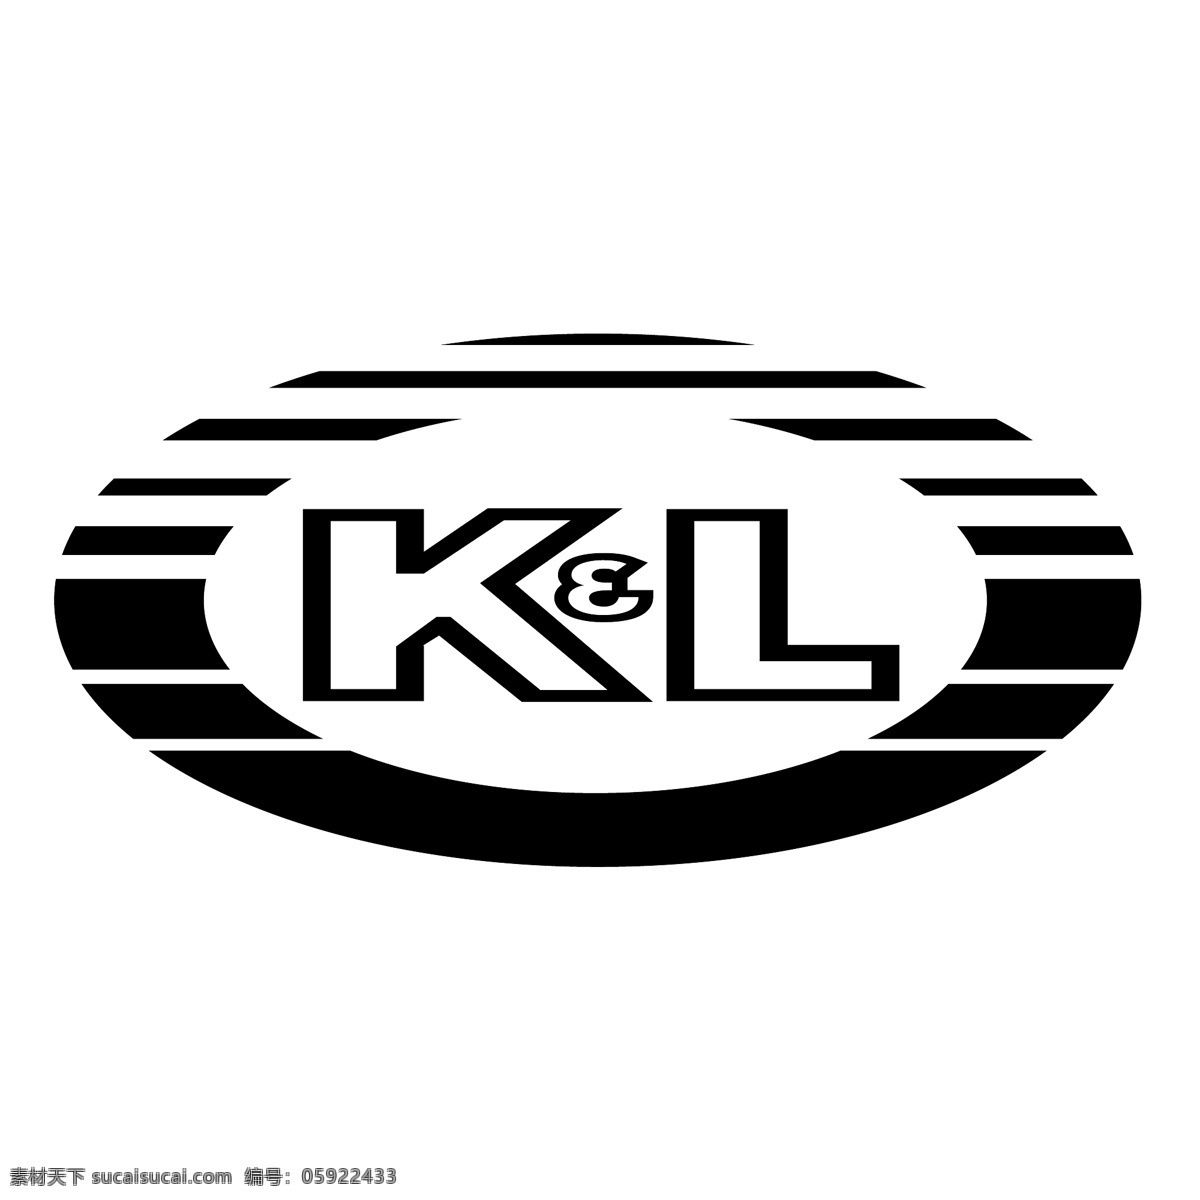 kl免费下载 kl向量 kl标志 kl 矢量 图形 标志 吉隆坡 吉隆坡eps 矢量kl 建筑家居